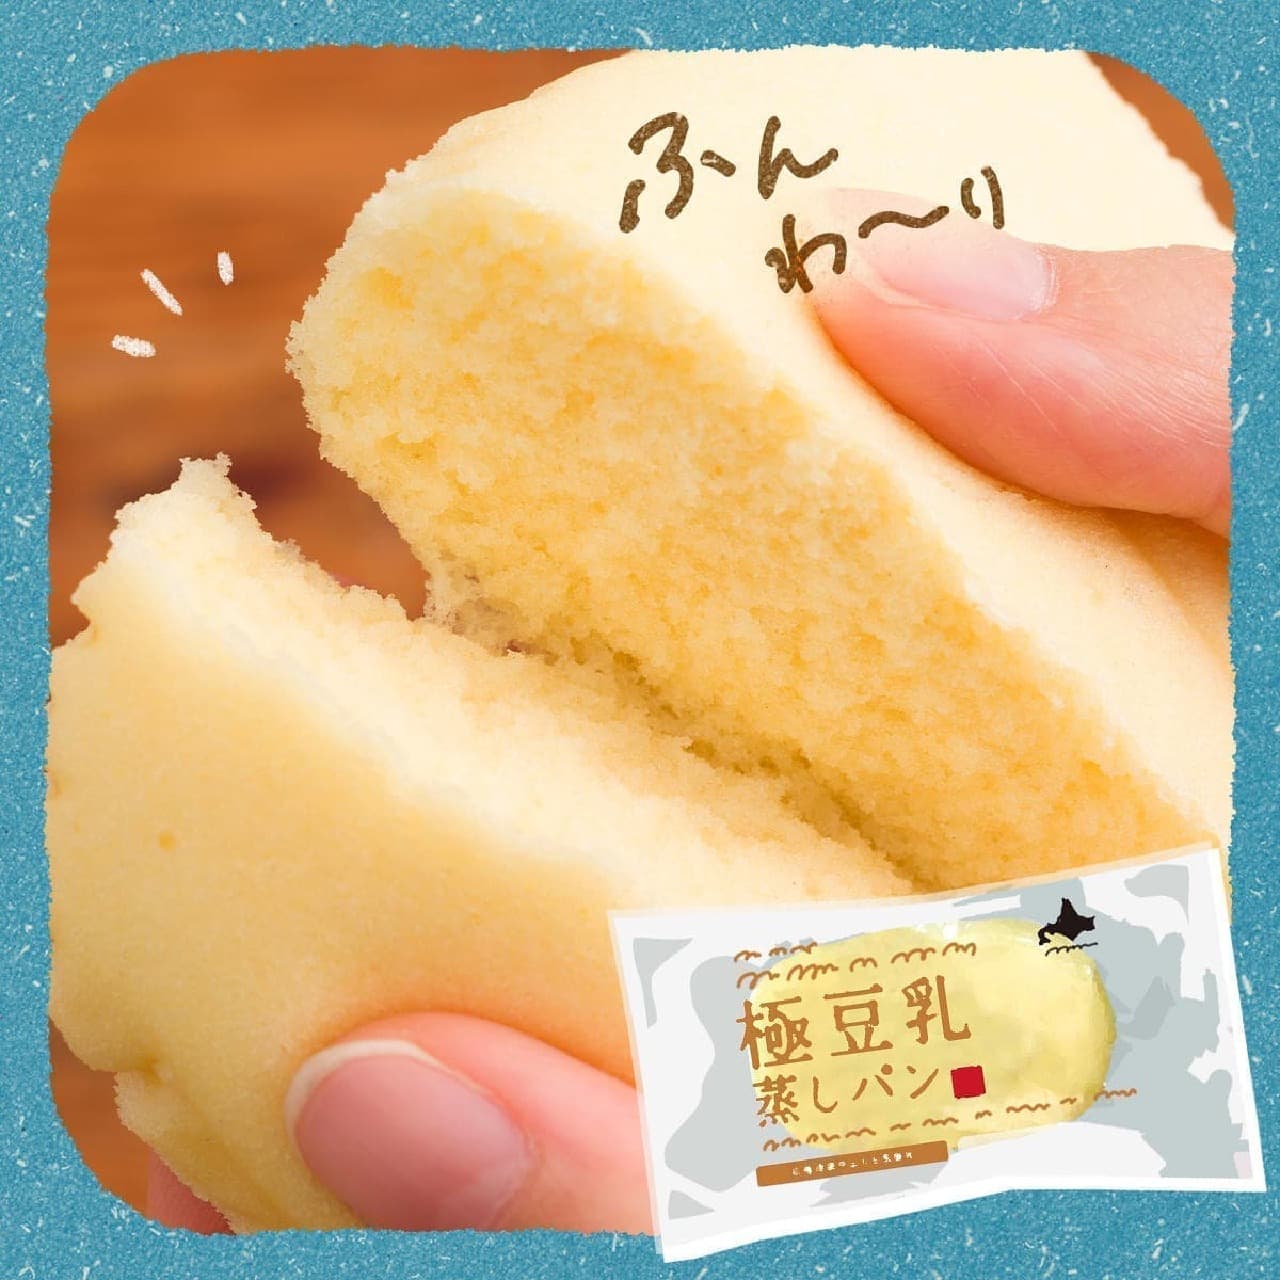 カルディ「もへじ北海道から 北海道産大豆の豆乳でつくった極豆乳蒸しパン」